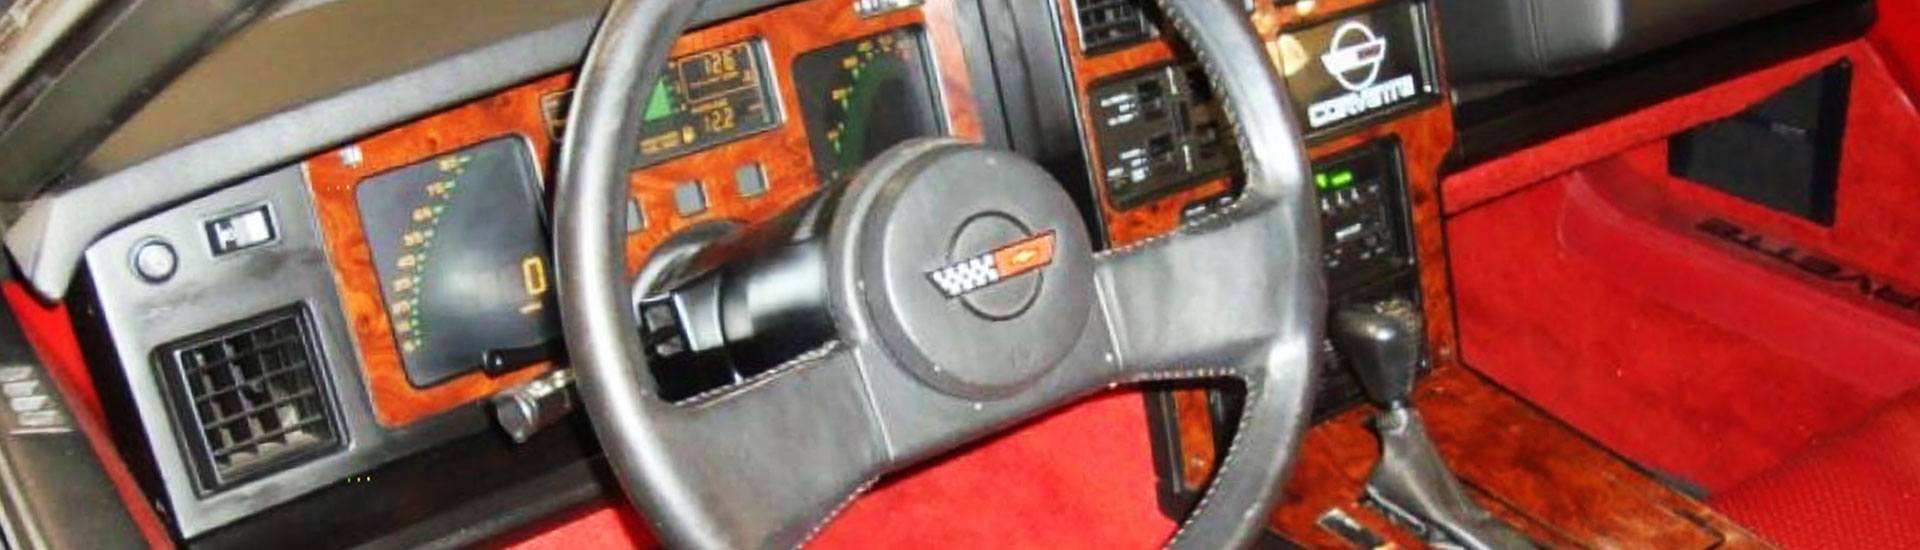 1985 Chevrolet Corvette Dash Kits